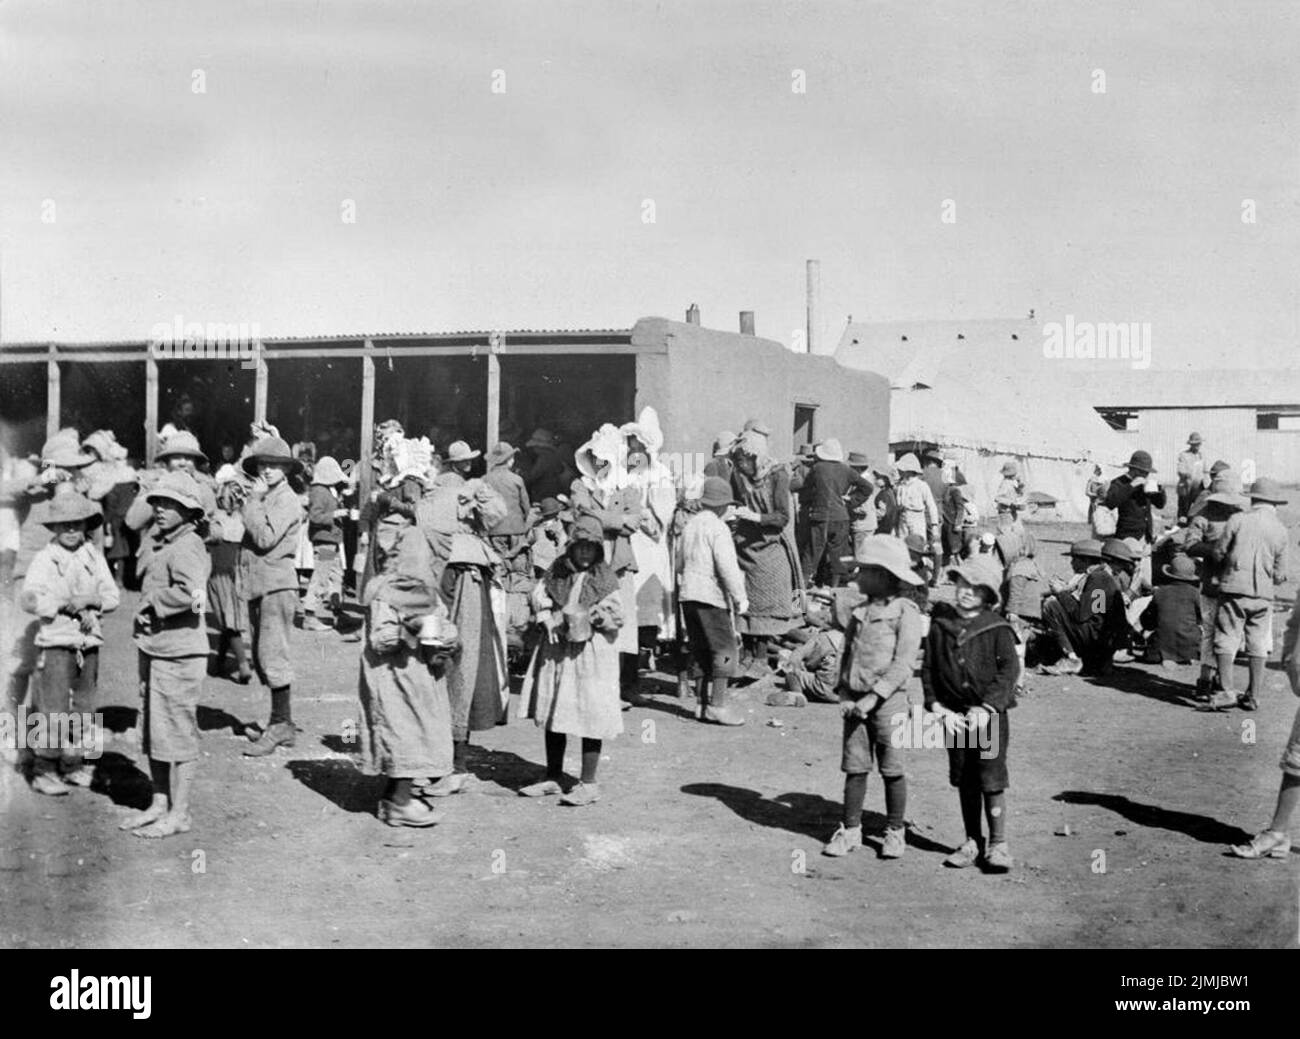 Le donne e i bambini di Boer in uno dei campi di concentramento allestiti per ospitare i Boer dopo essere stati cacciati dalle loro case come parte della politica di terra bruciata di Lord Kitchener nel Transvaal. Foto Stock